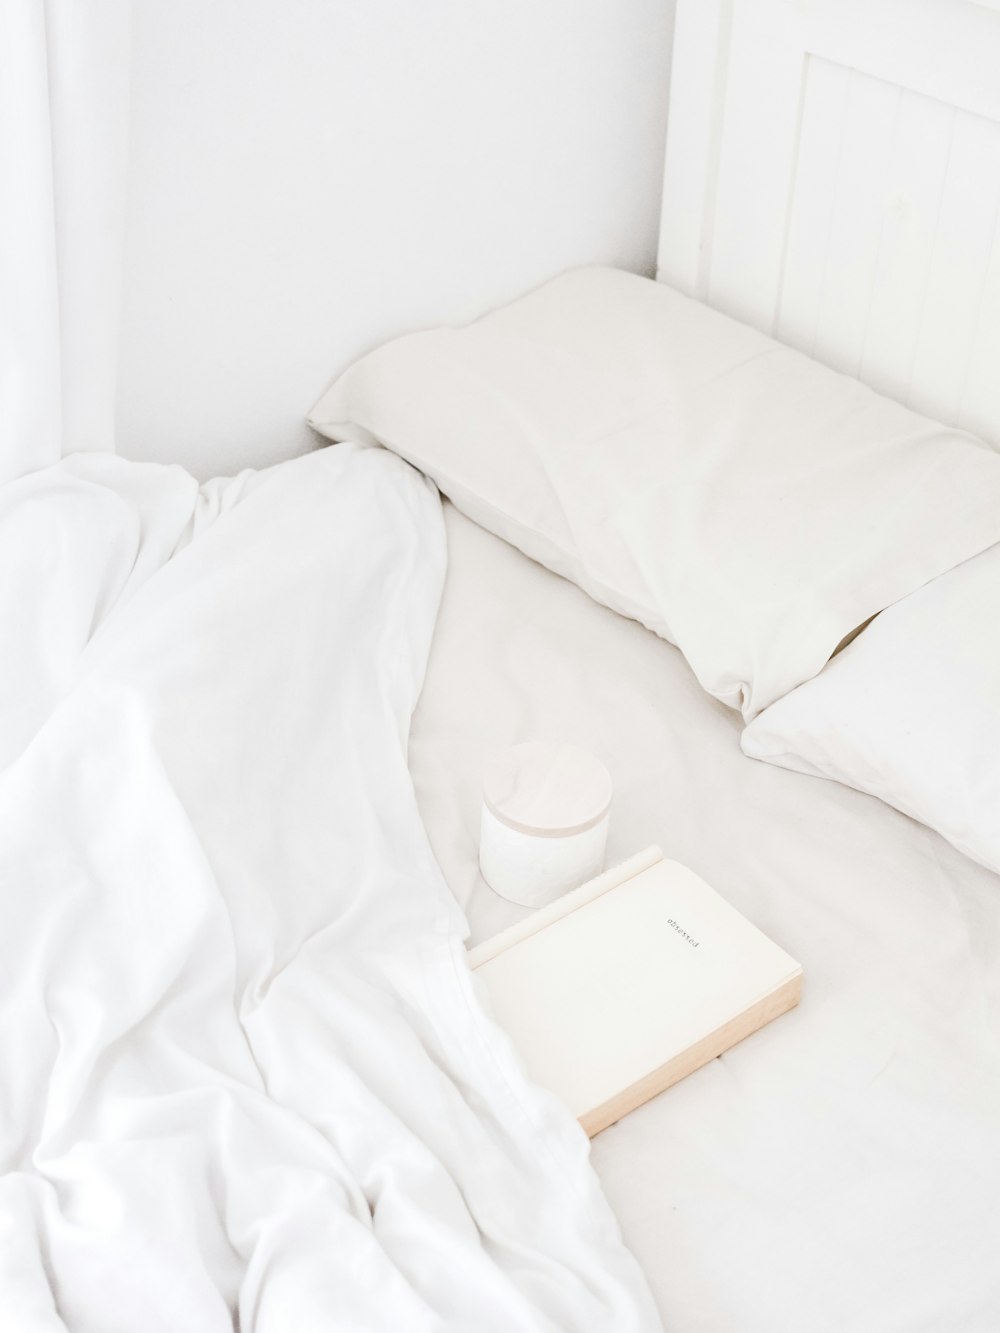 침대에 놓인 흰색 휴대용 스피커